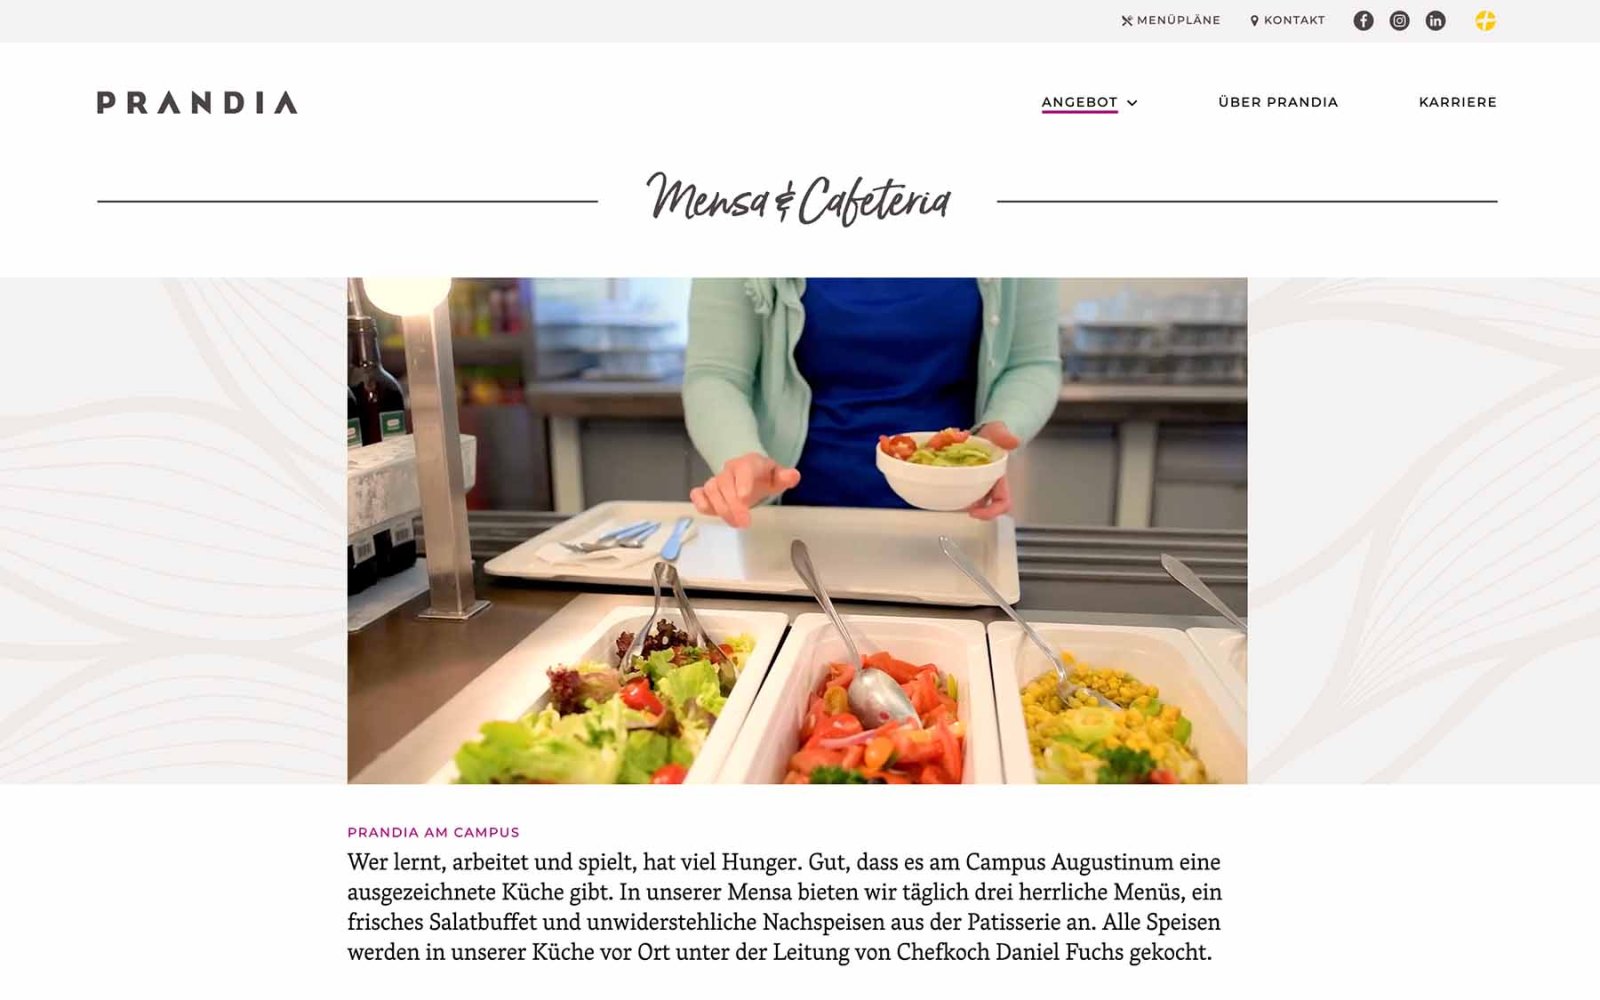 Gastronomie-Website Prandia – Angebote Mensa und Cafeteria. Text mit großem Bild.